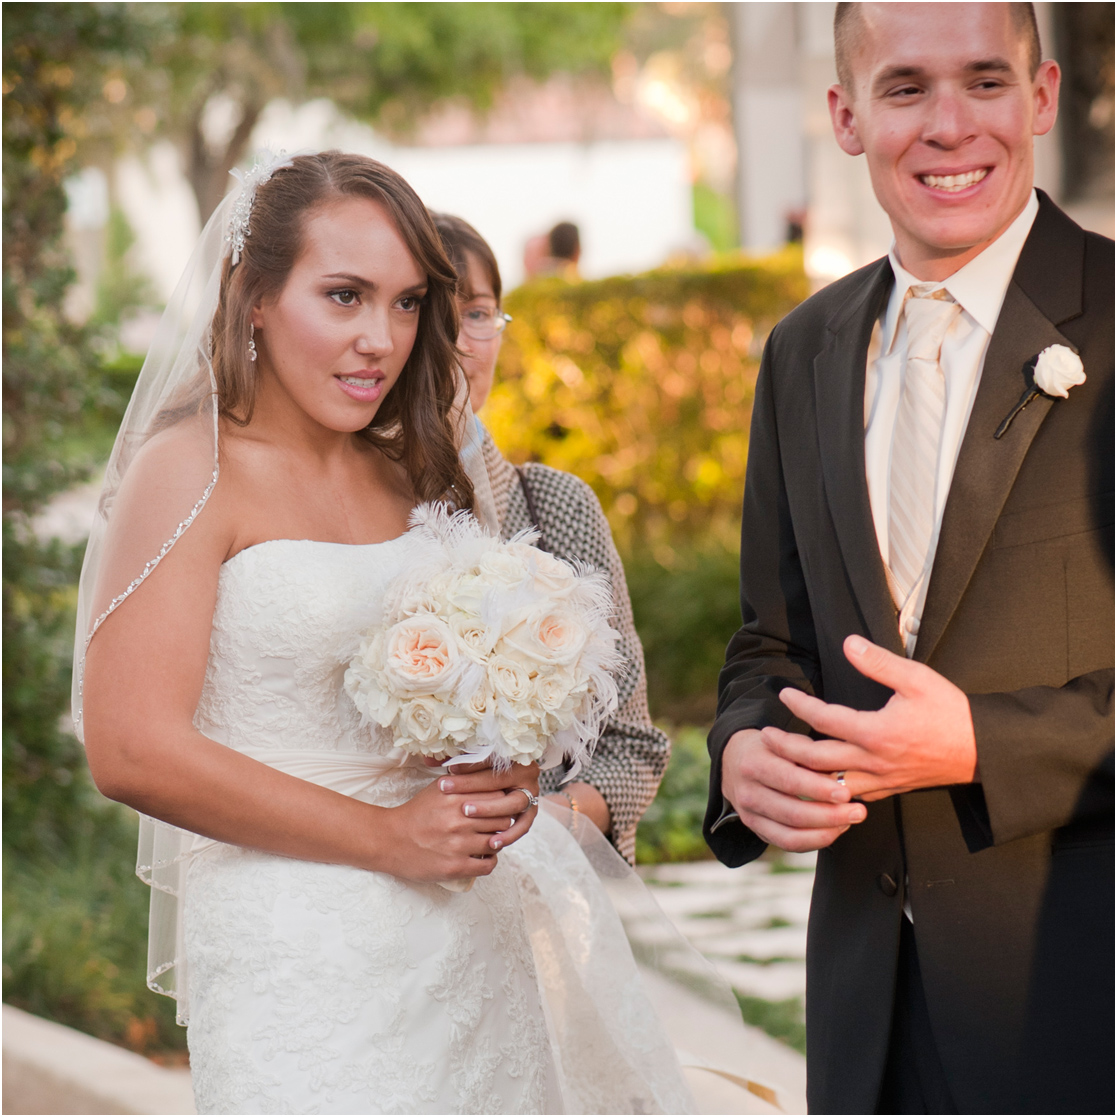 Best Wedding Photographers in Orlando FL